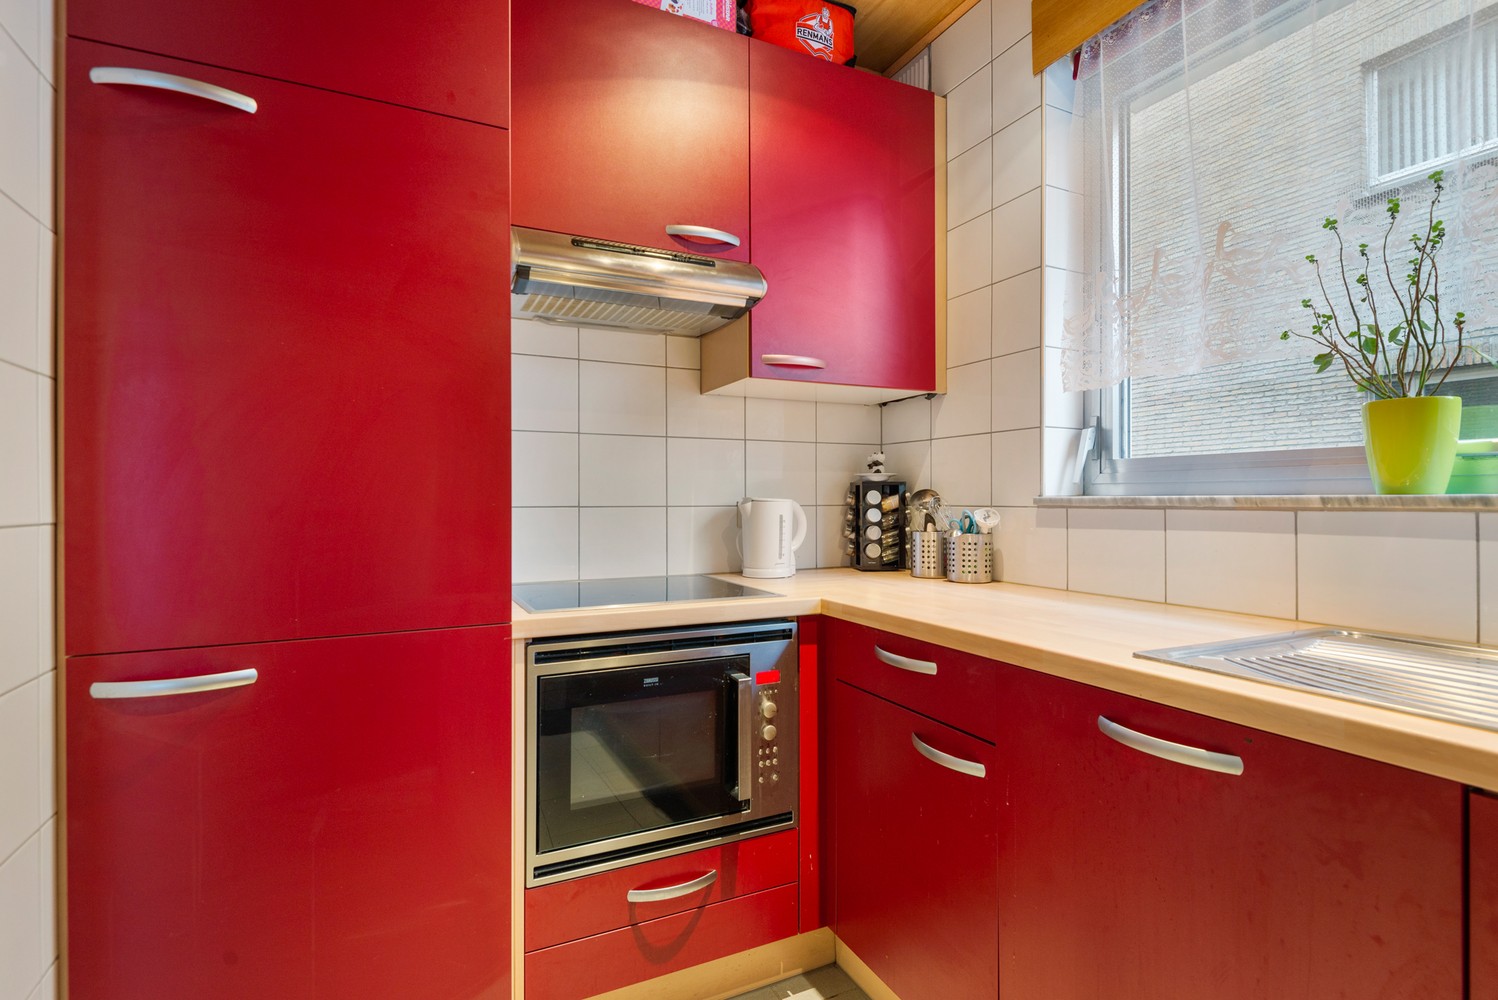 Gelijkvloers appartement met 2 slaapkamers, inclusief garage in Borsbeek! afbeelding 9